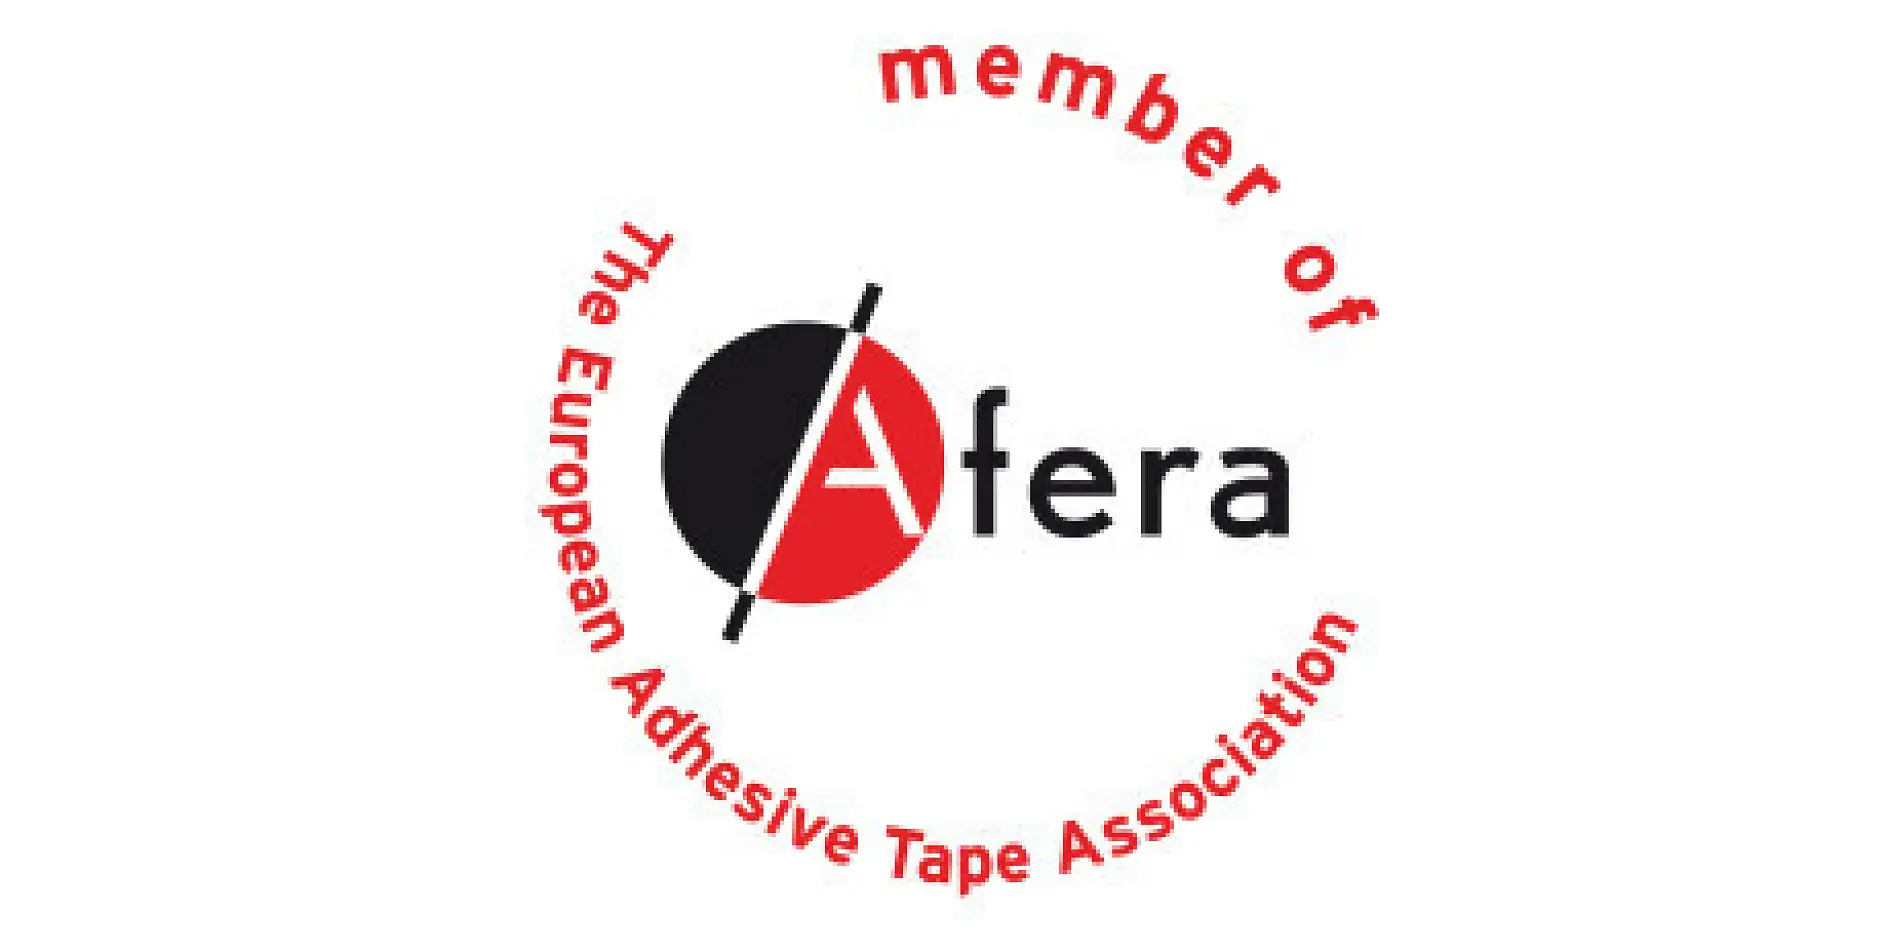 Wir sind Mitglied des Afera-Verbands (European Adhesive Tape Association). Zu den Mitgliedern zählen Hersteller genauso wie Zulieferer von Rohmaterialien und Maschinen, Converter (sie bedrucken, beschneiden, stanzen, laminieren etc. Klebebänder) und nationale Klebebandverbände.